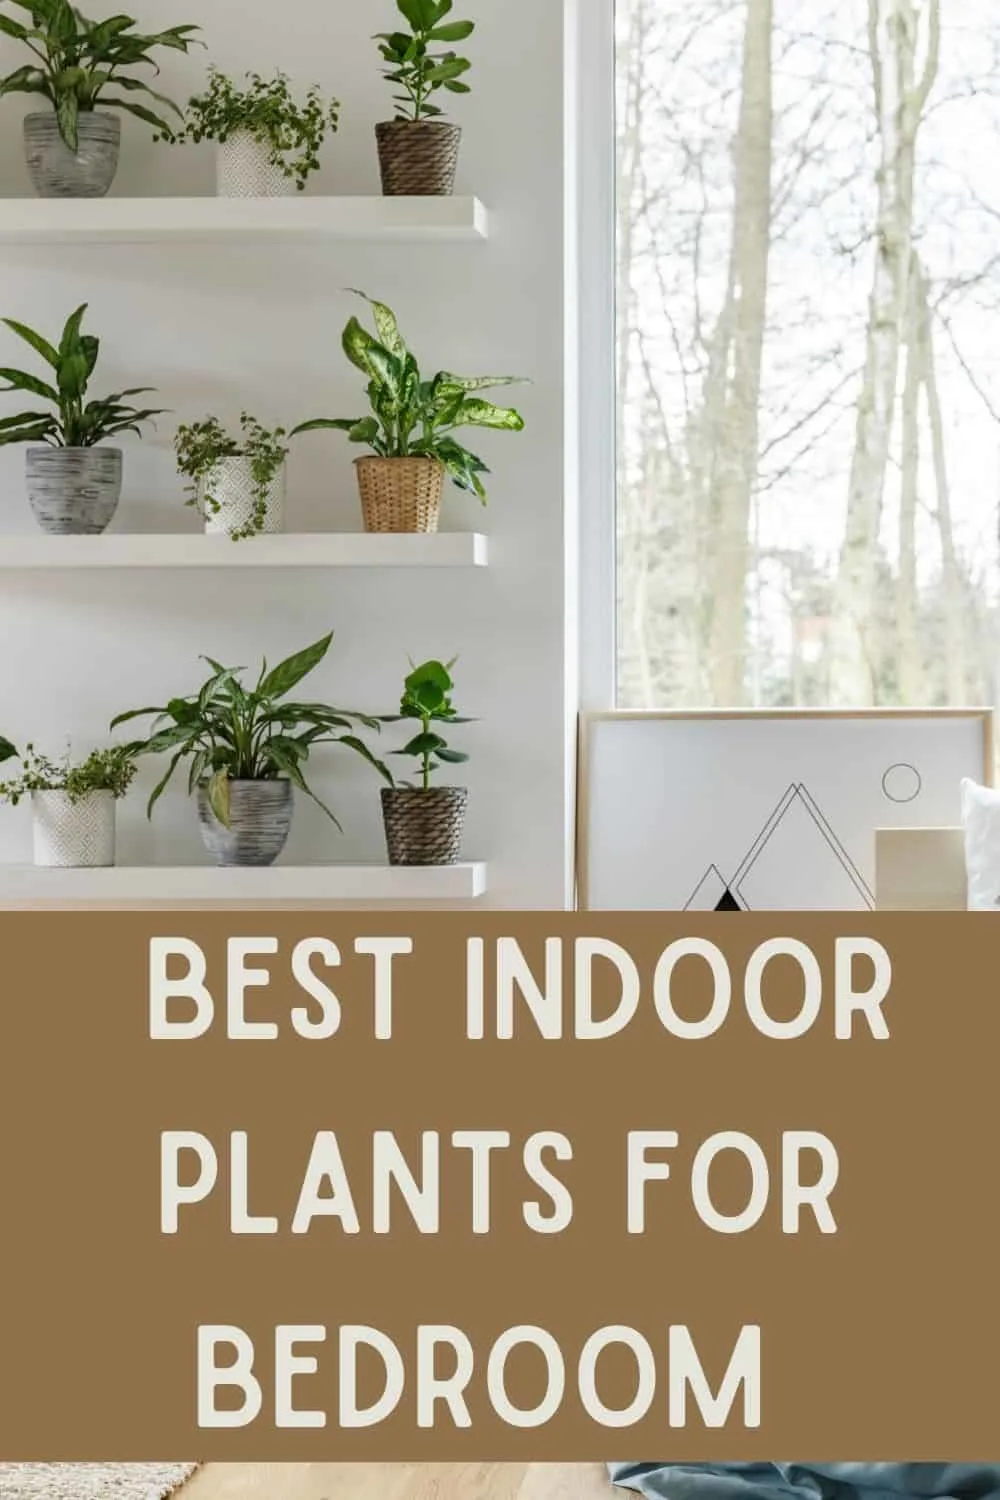 Best indoor plants for bedroom